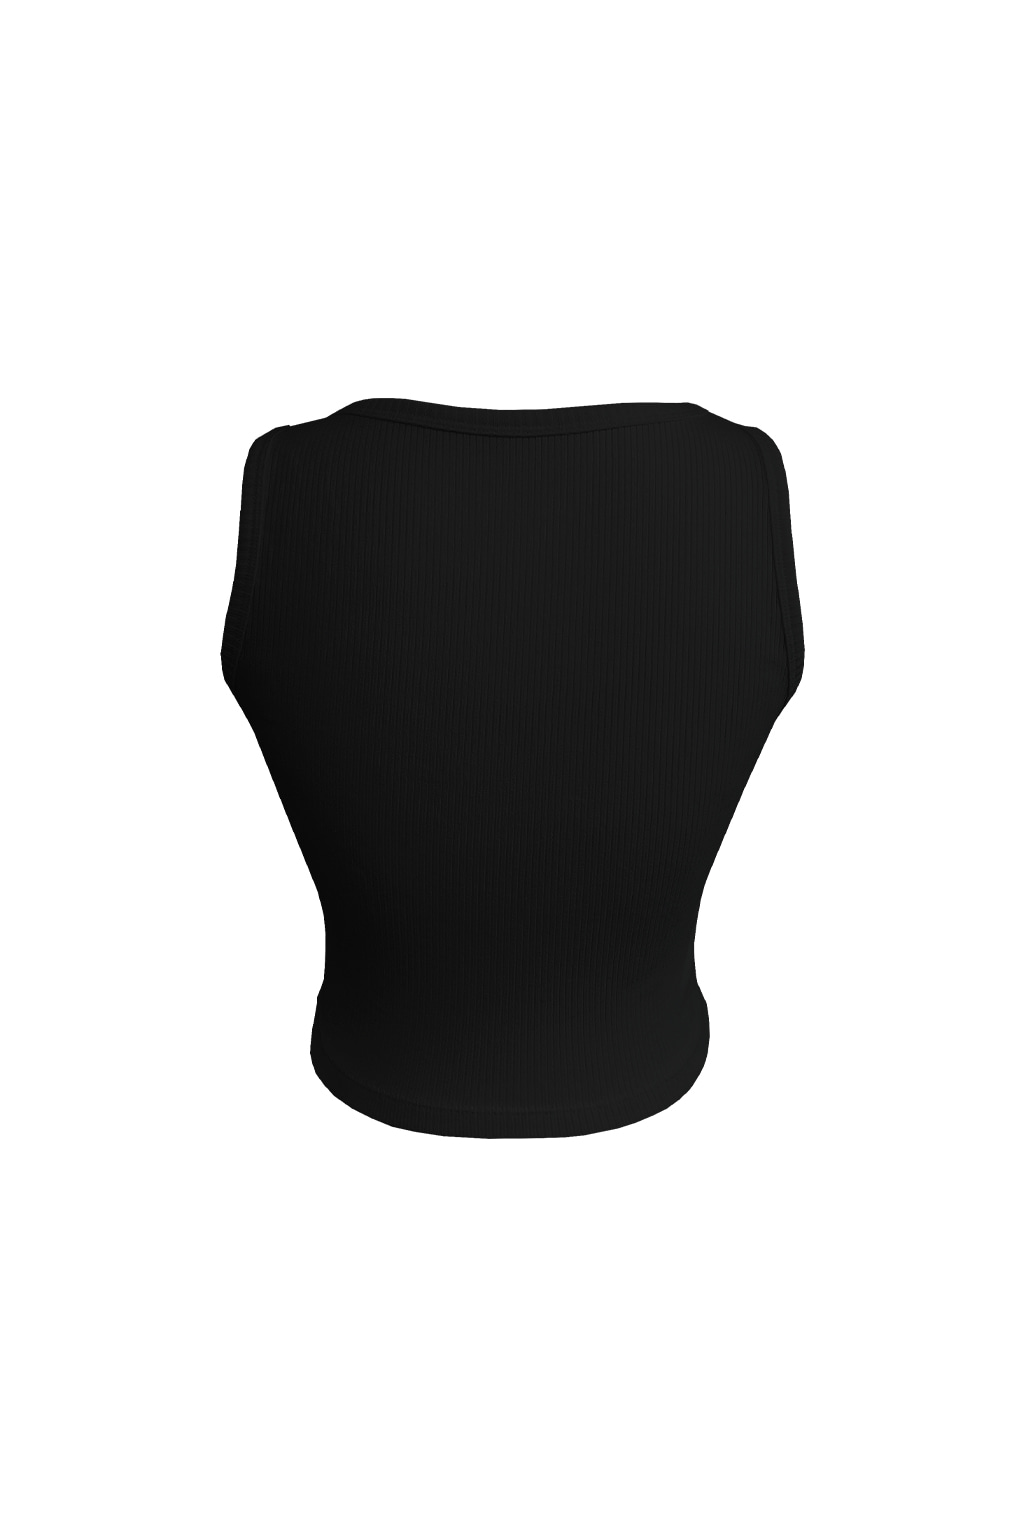 H logo elastic ribbed cropped sleeveless Black